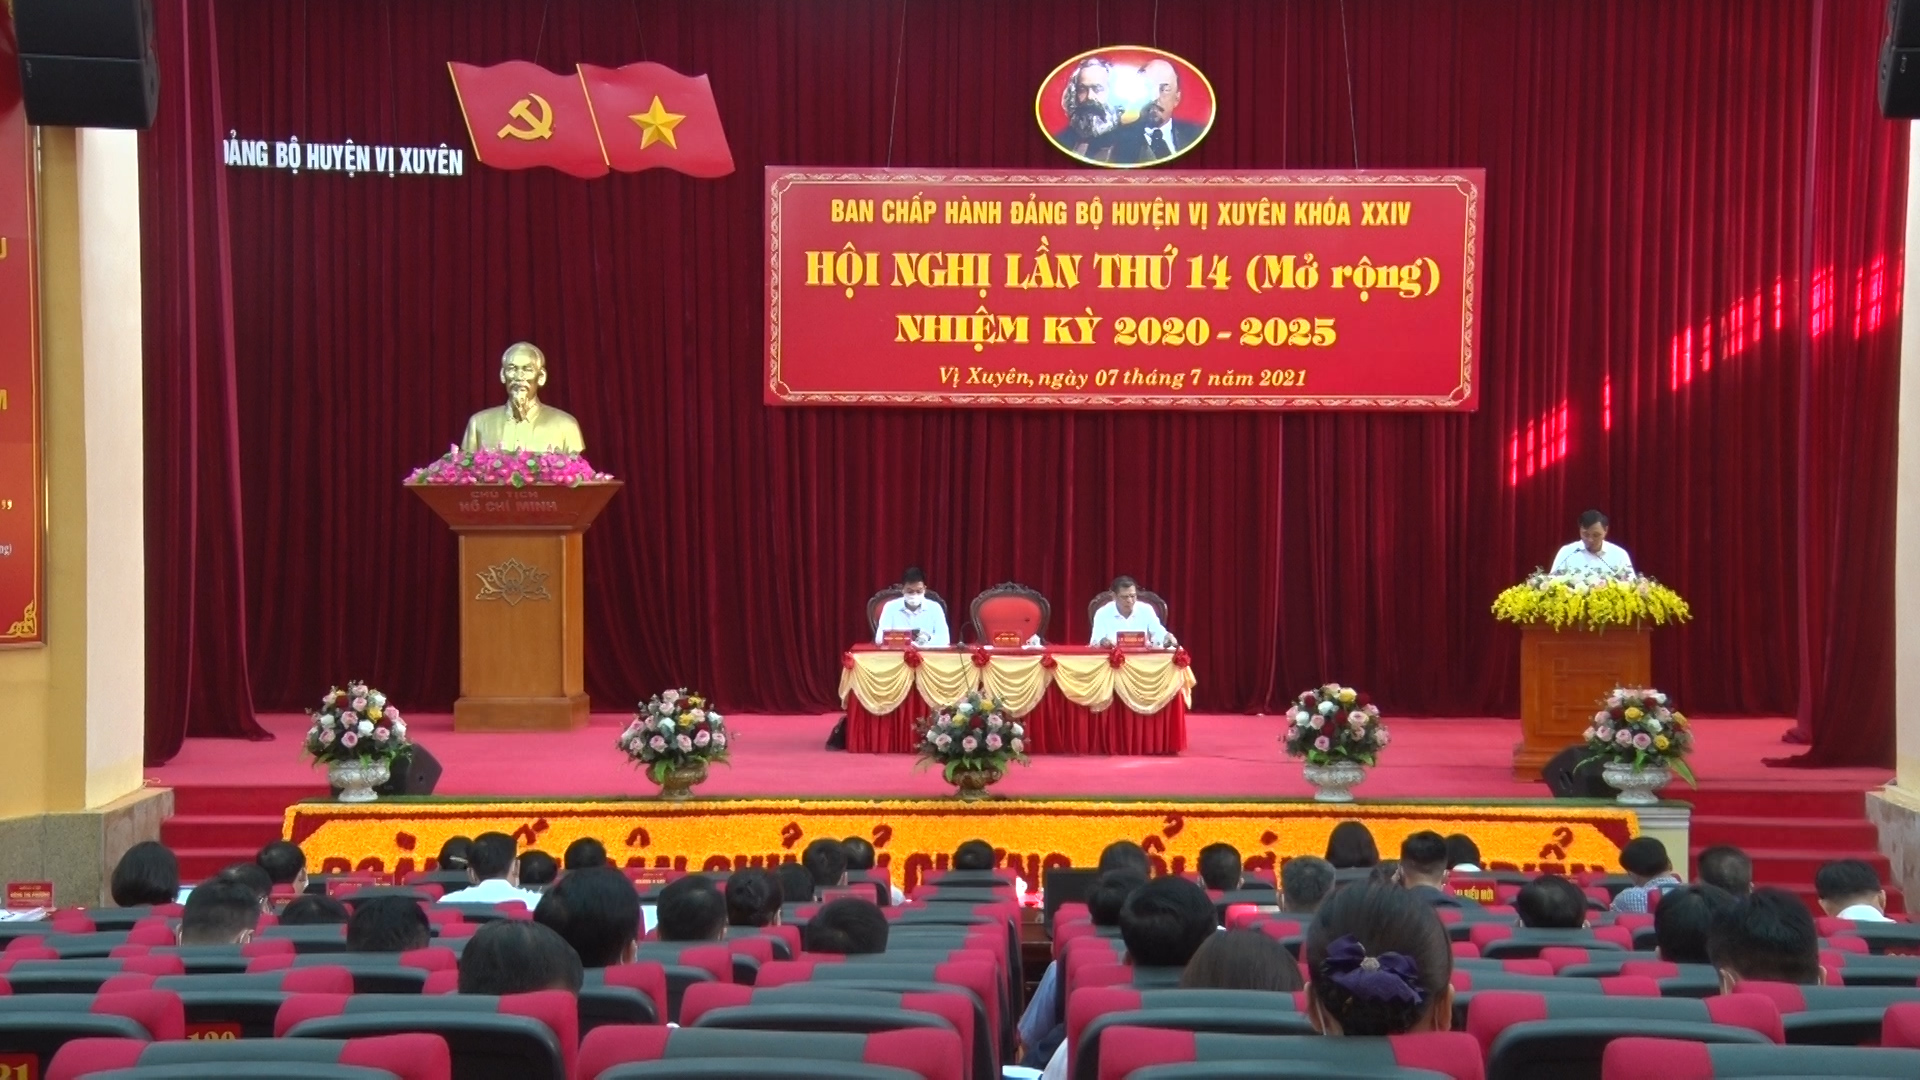 Hội nghị Ban chấp hành Đảng bộ huyện Vị Xuyên lần thứ 14 ( mở rộng)